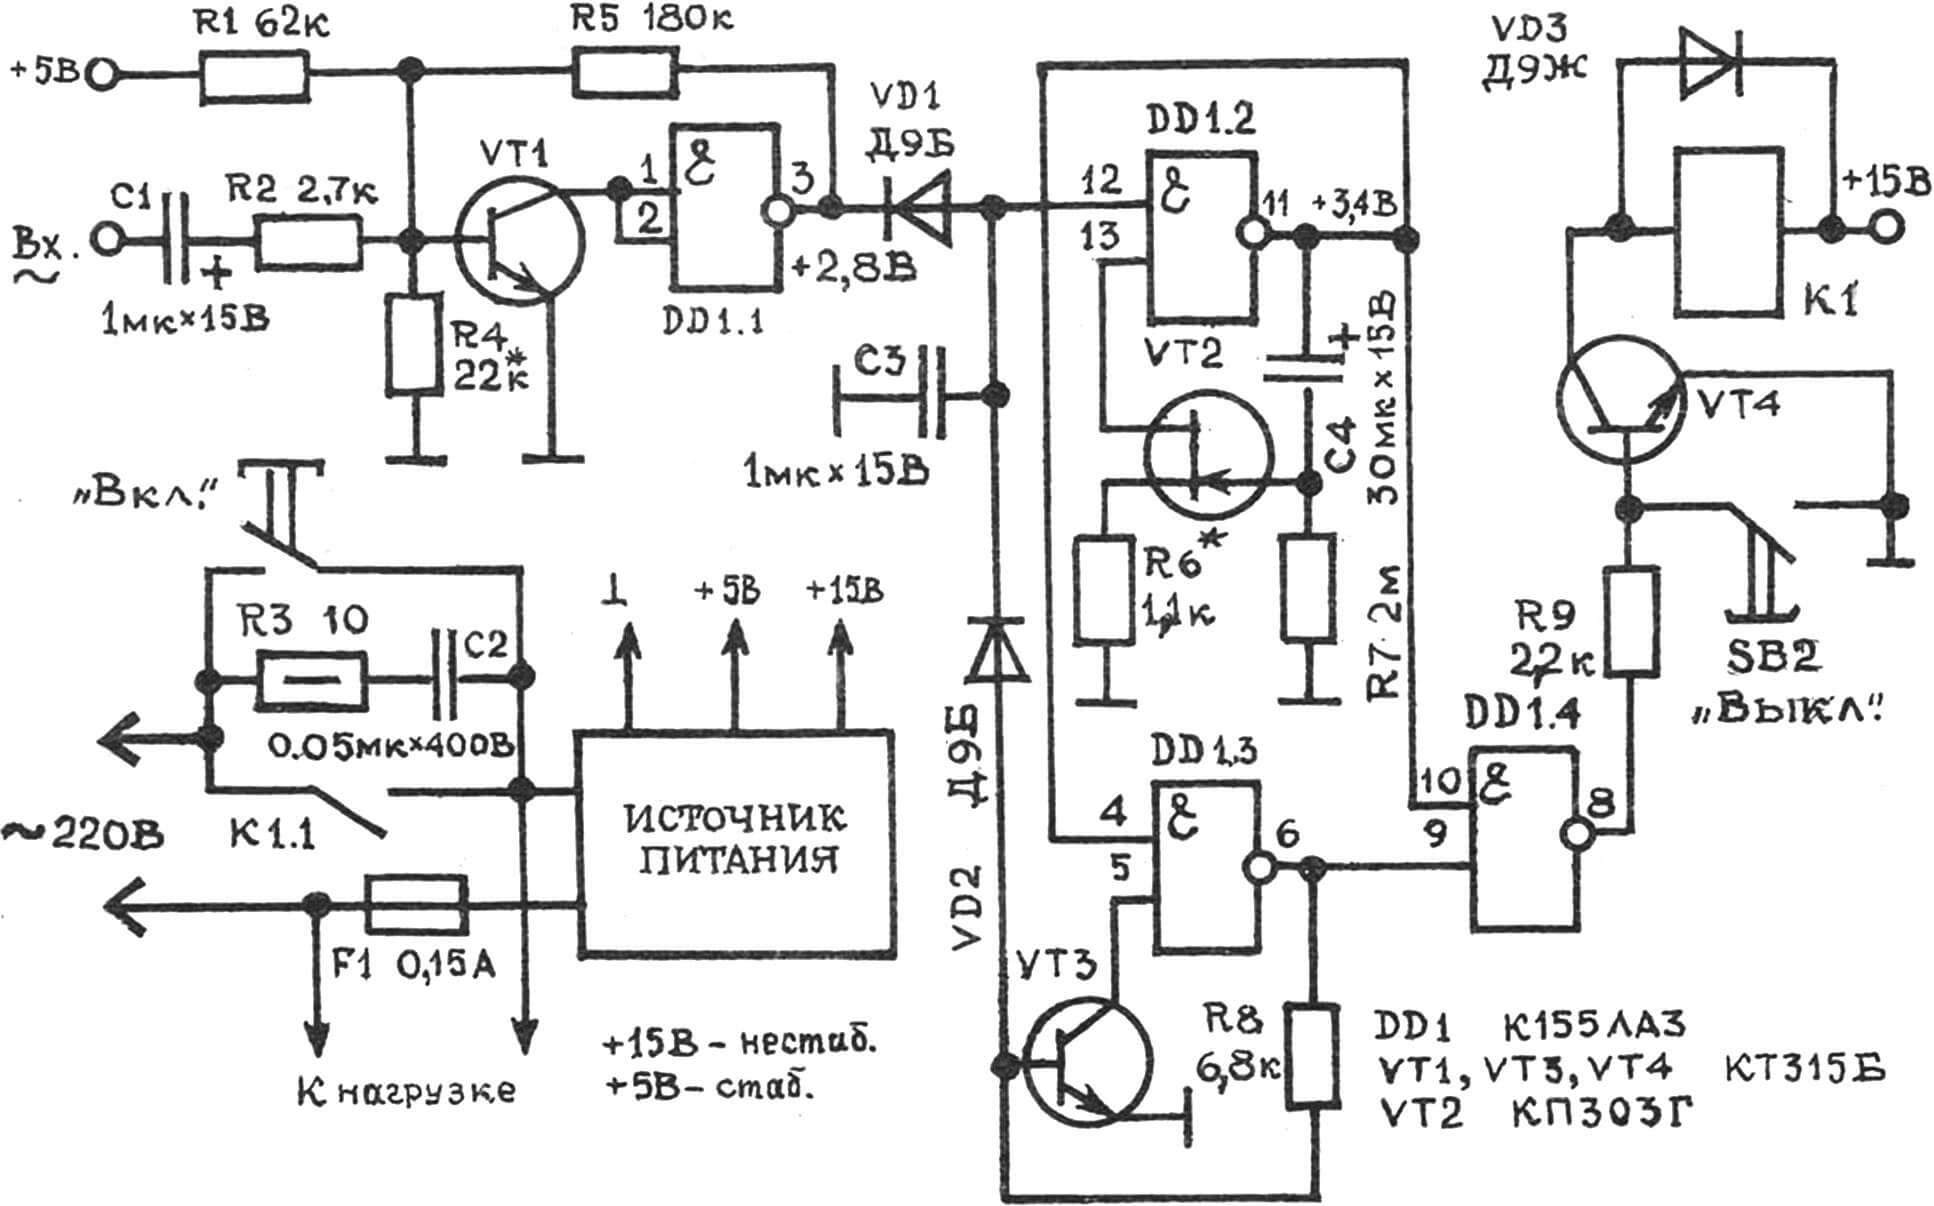 Рис. 1. Принципиальная схема автоматического выключателя для устройств звуковоспроизведения.